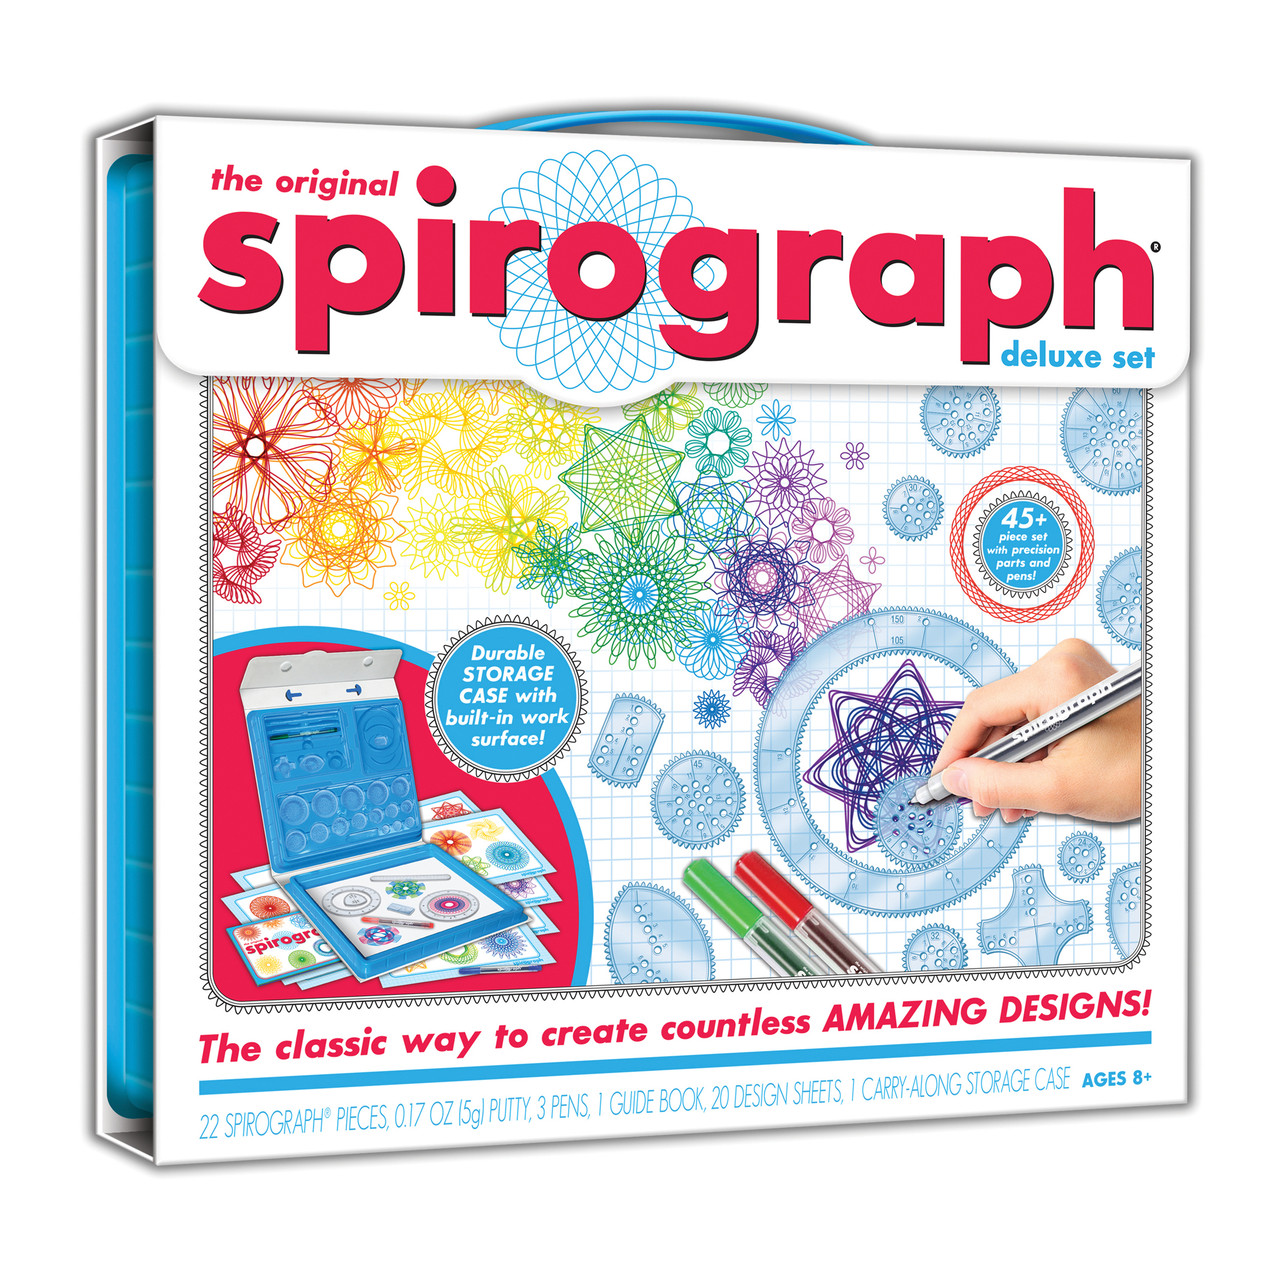 Spirograph Cyclex Kit